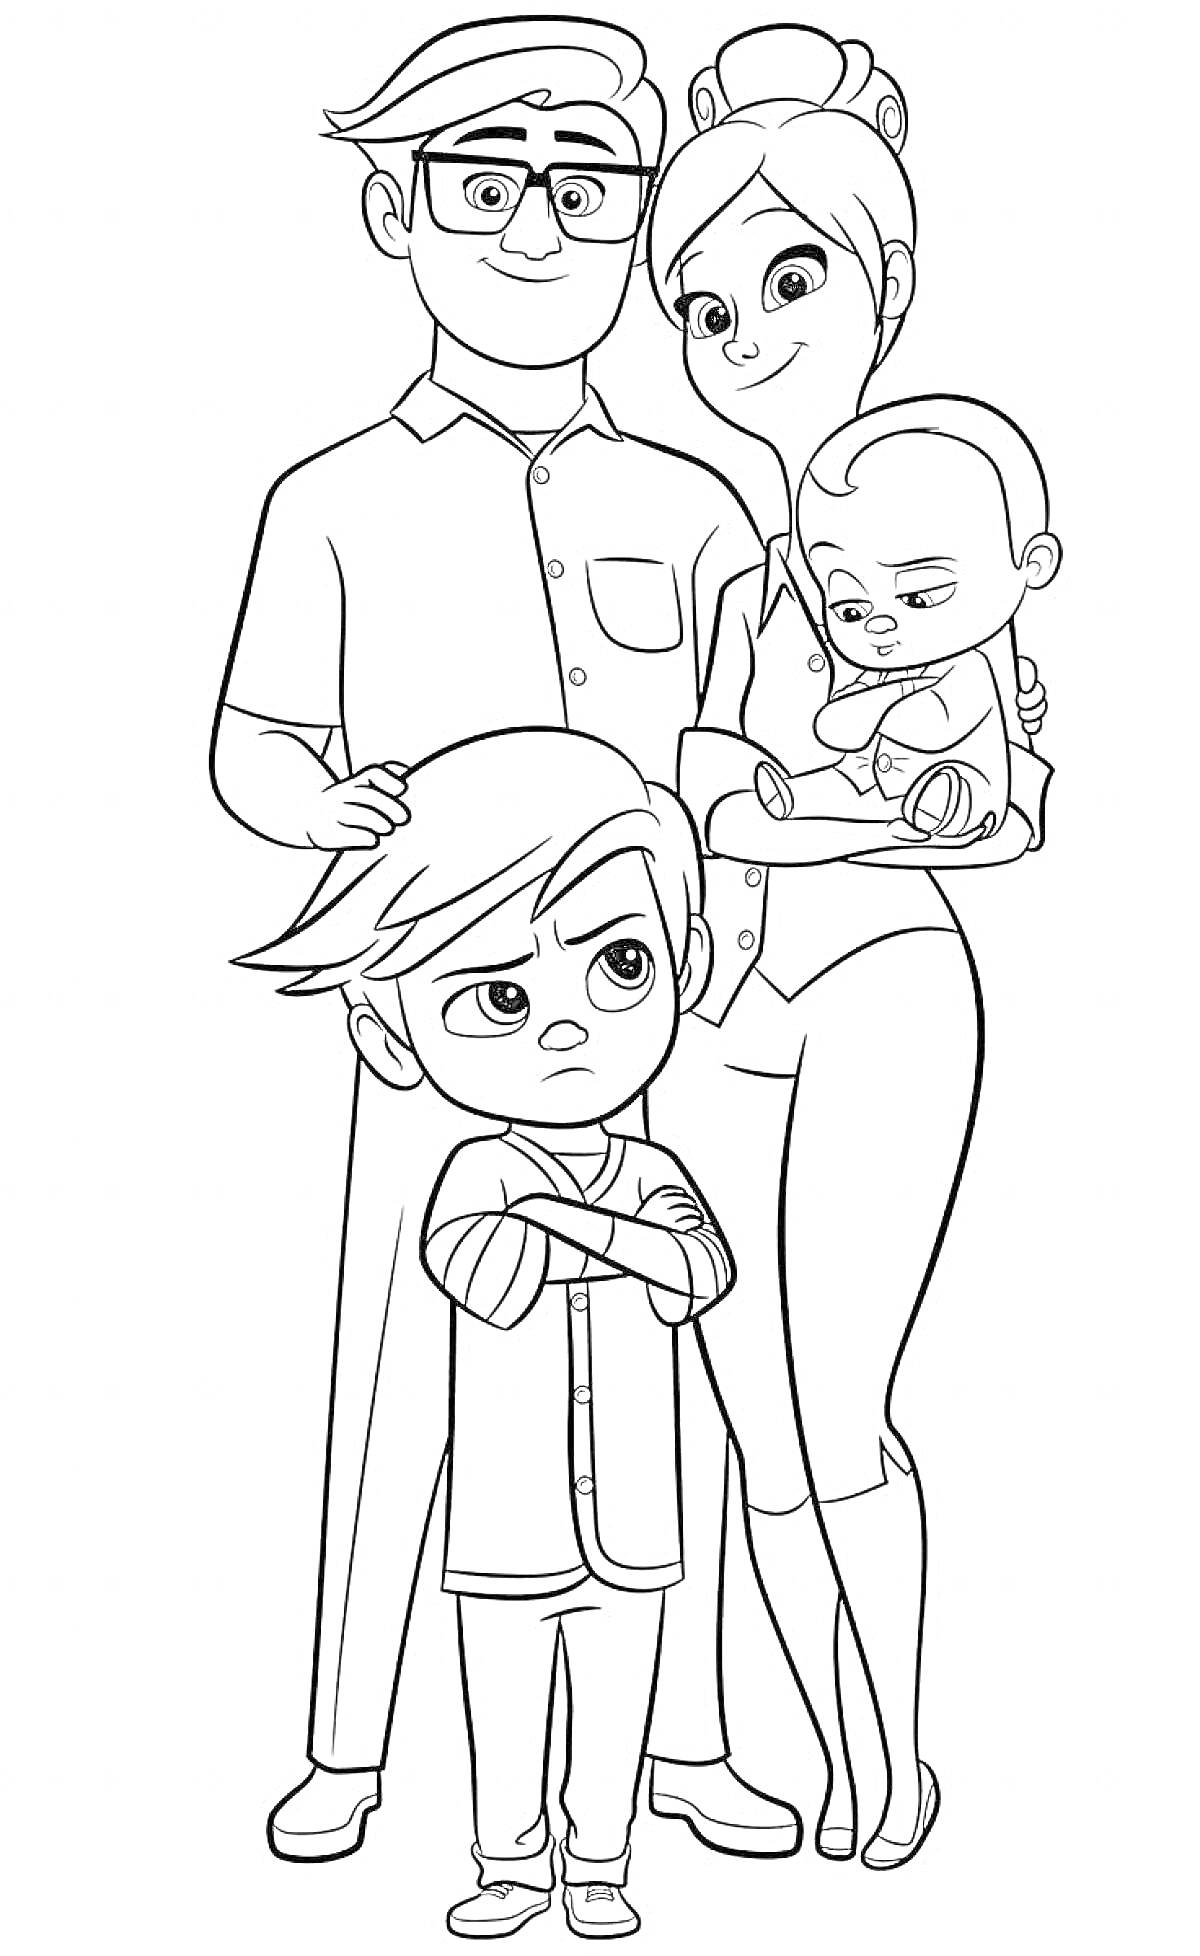 Раскраска Семья с боссом молокососом, взрослый мужчина и женщина, мальчик и младенец